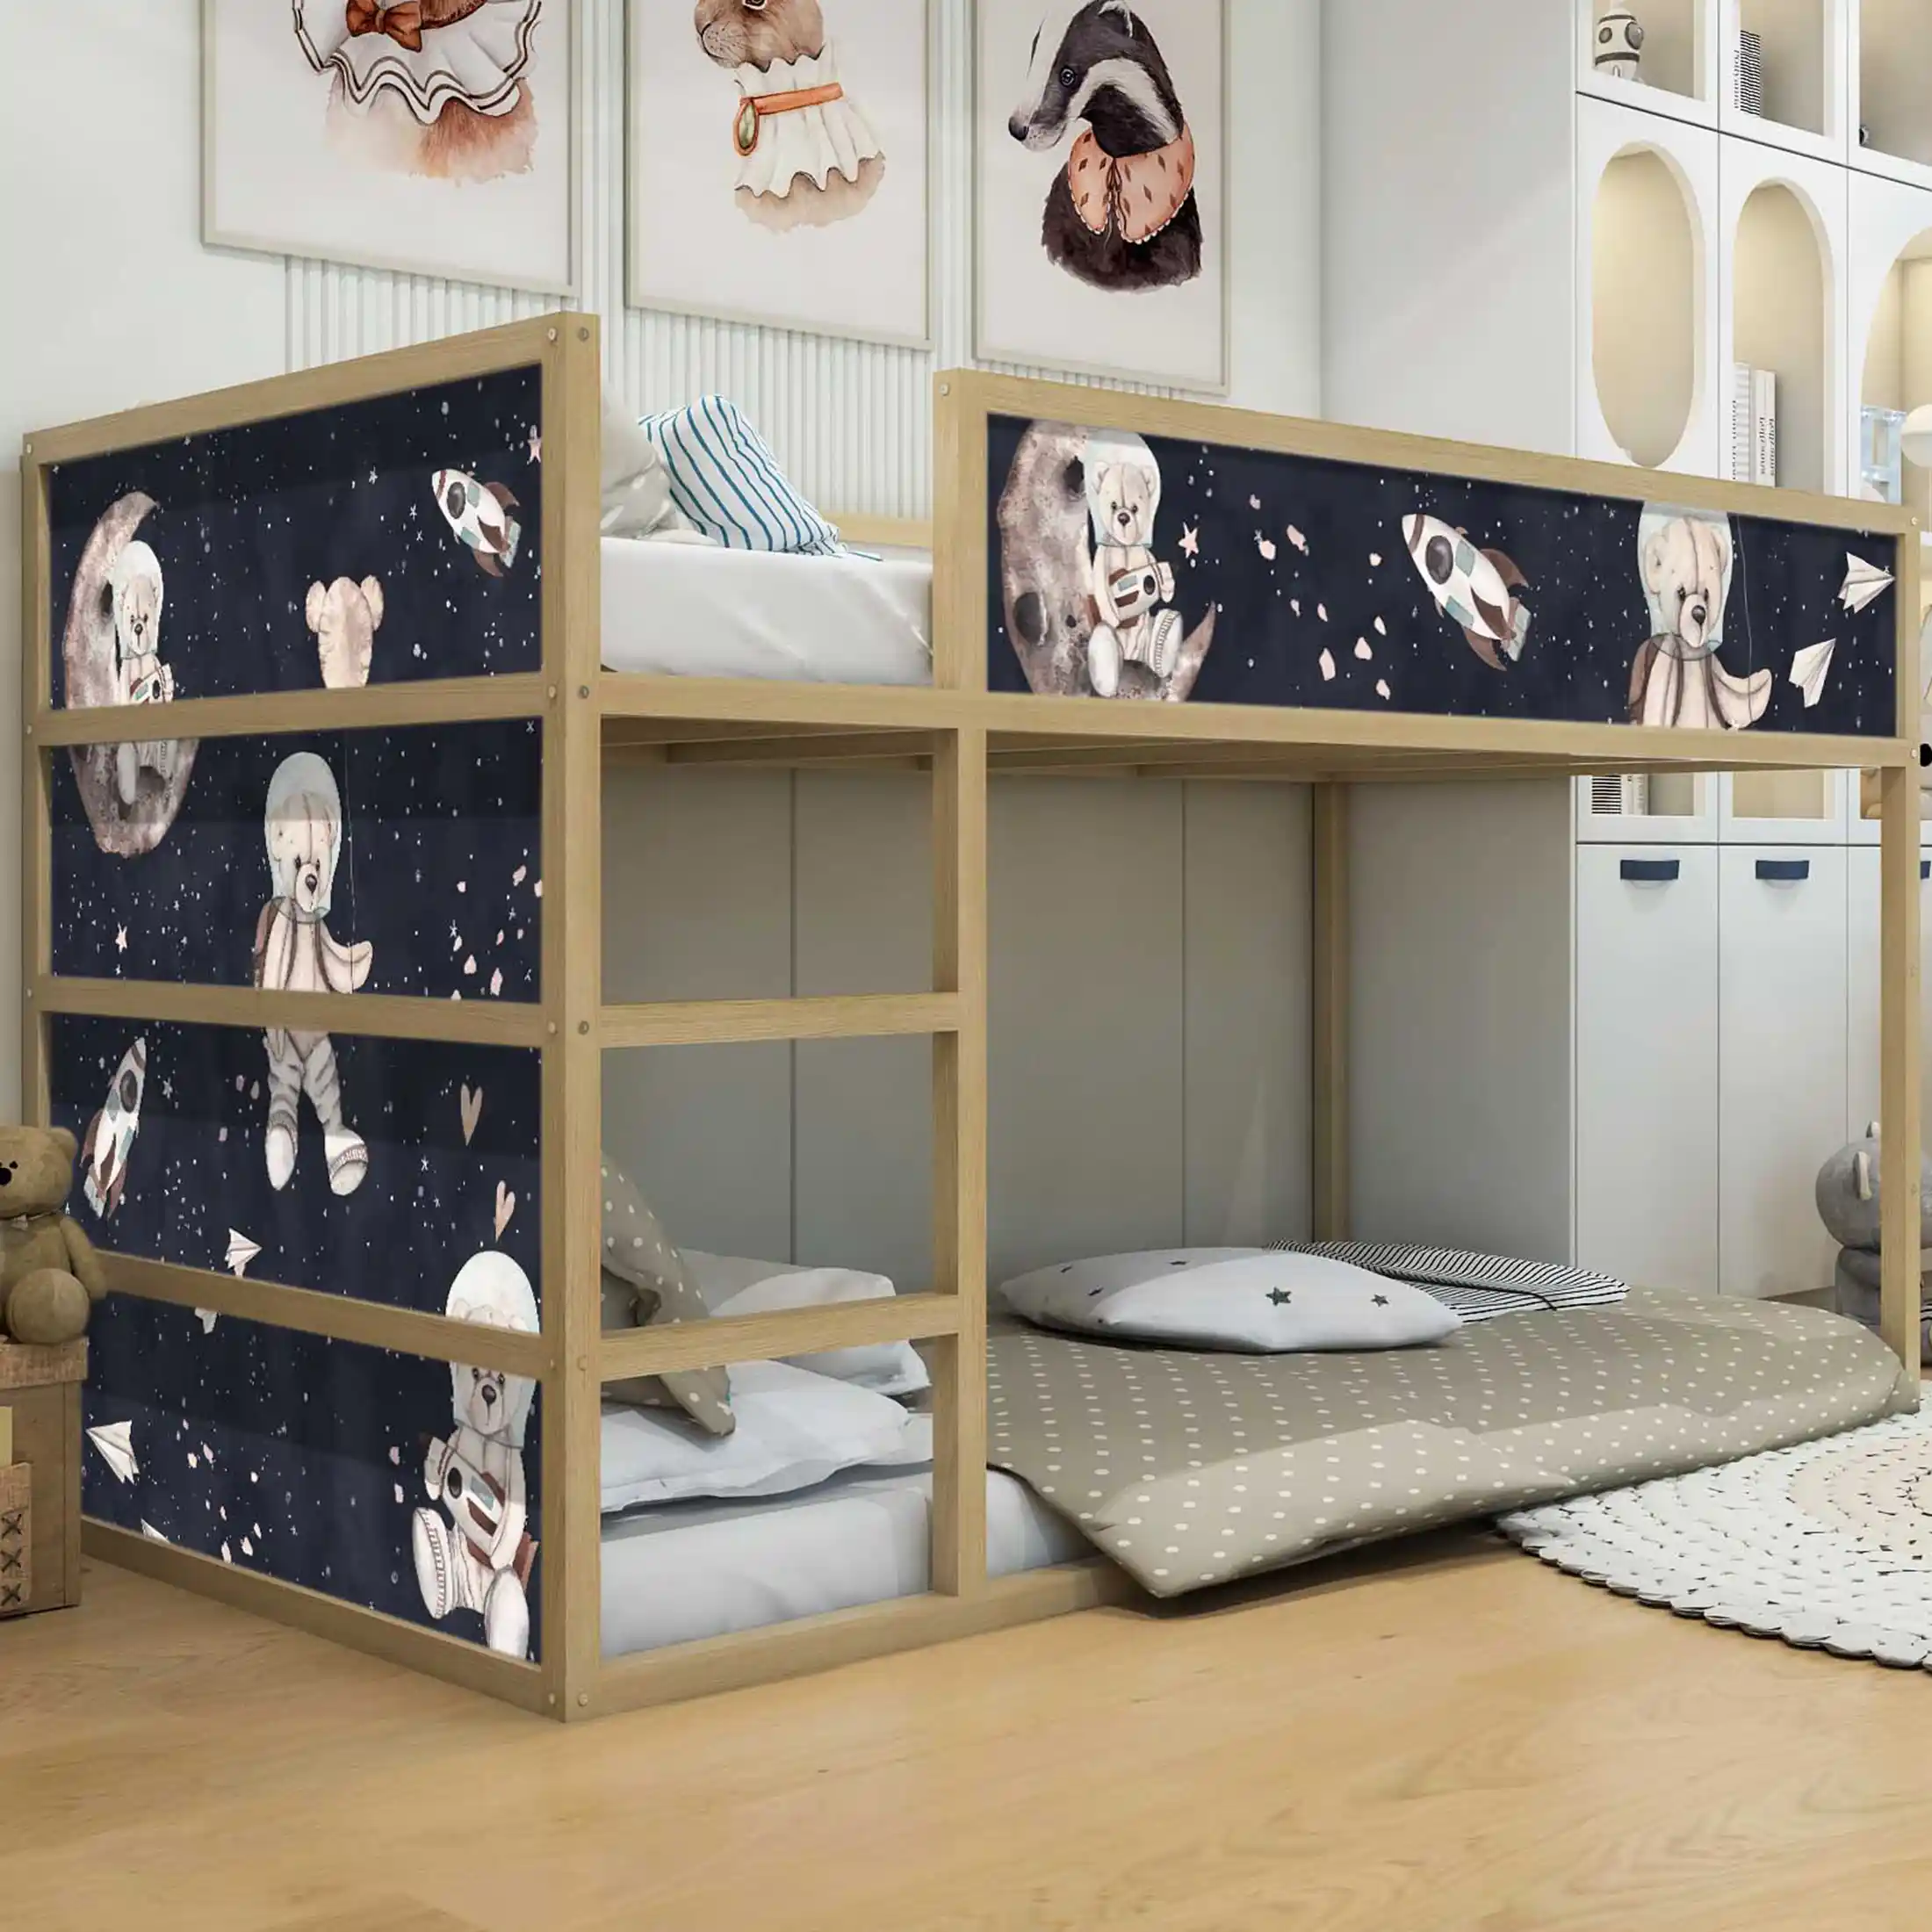 Aufkleber für IKEA KURA Kinderbett Astronaut Teddy